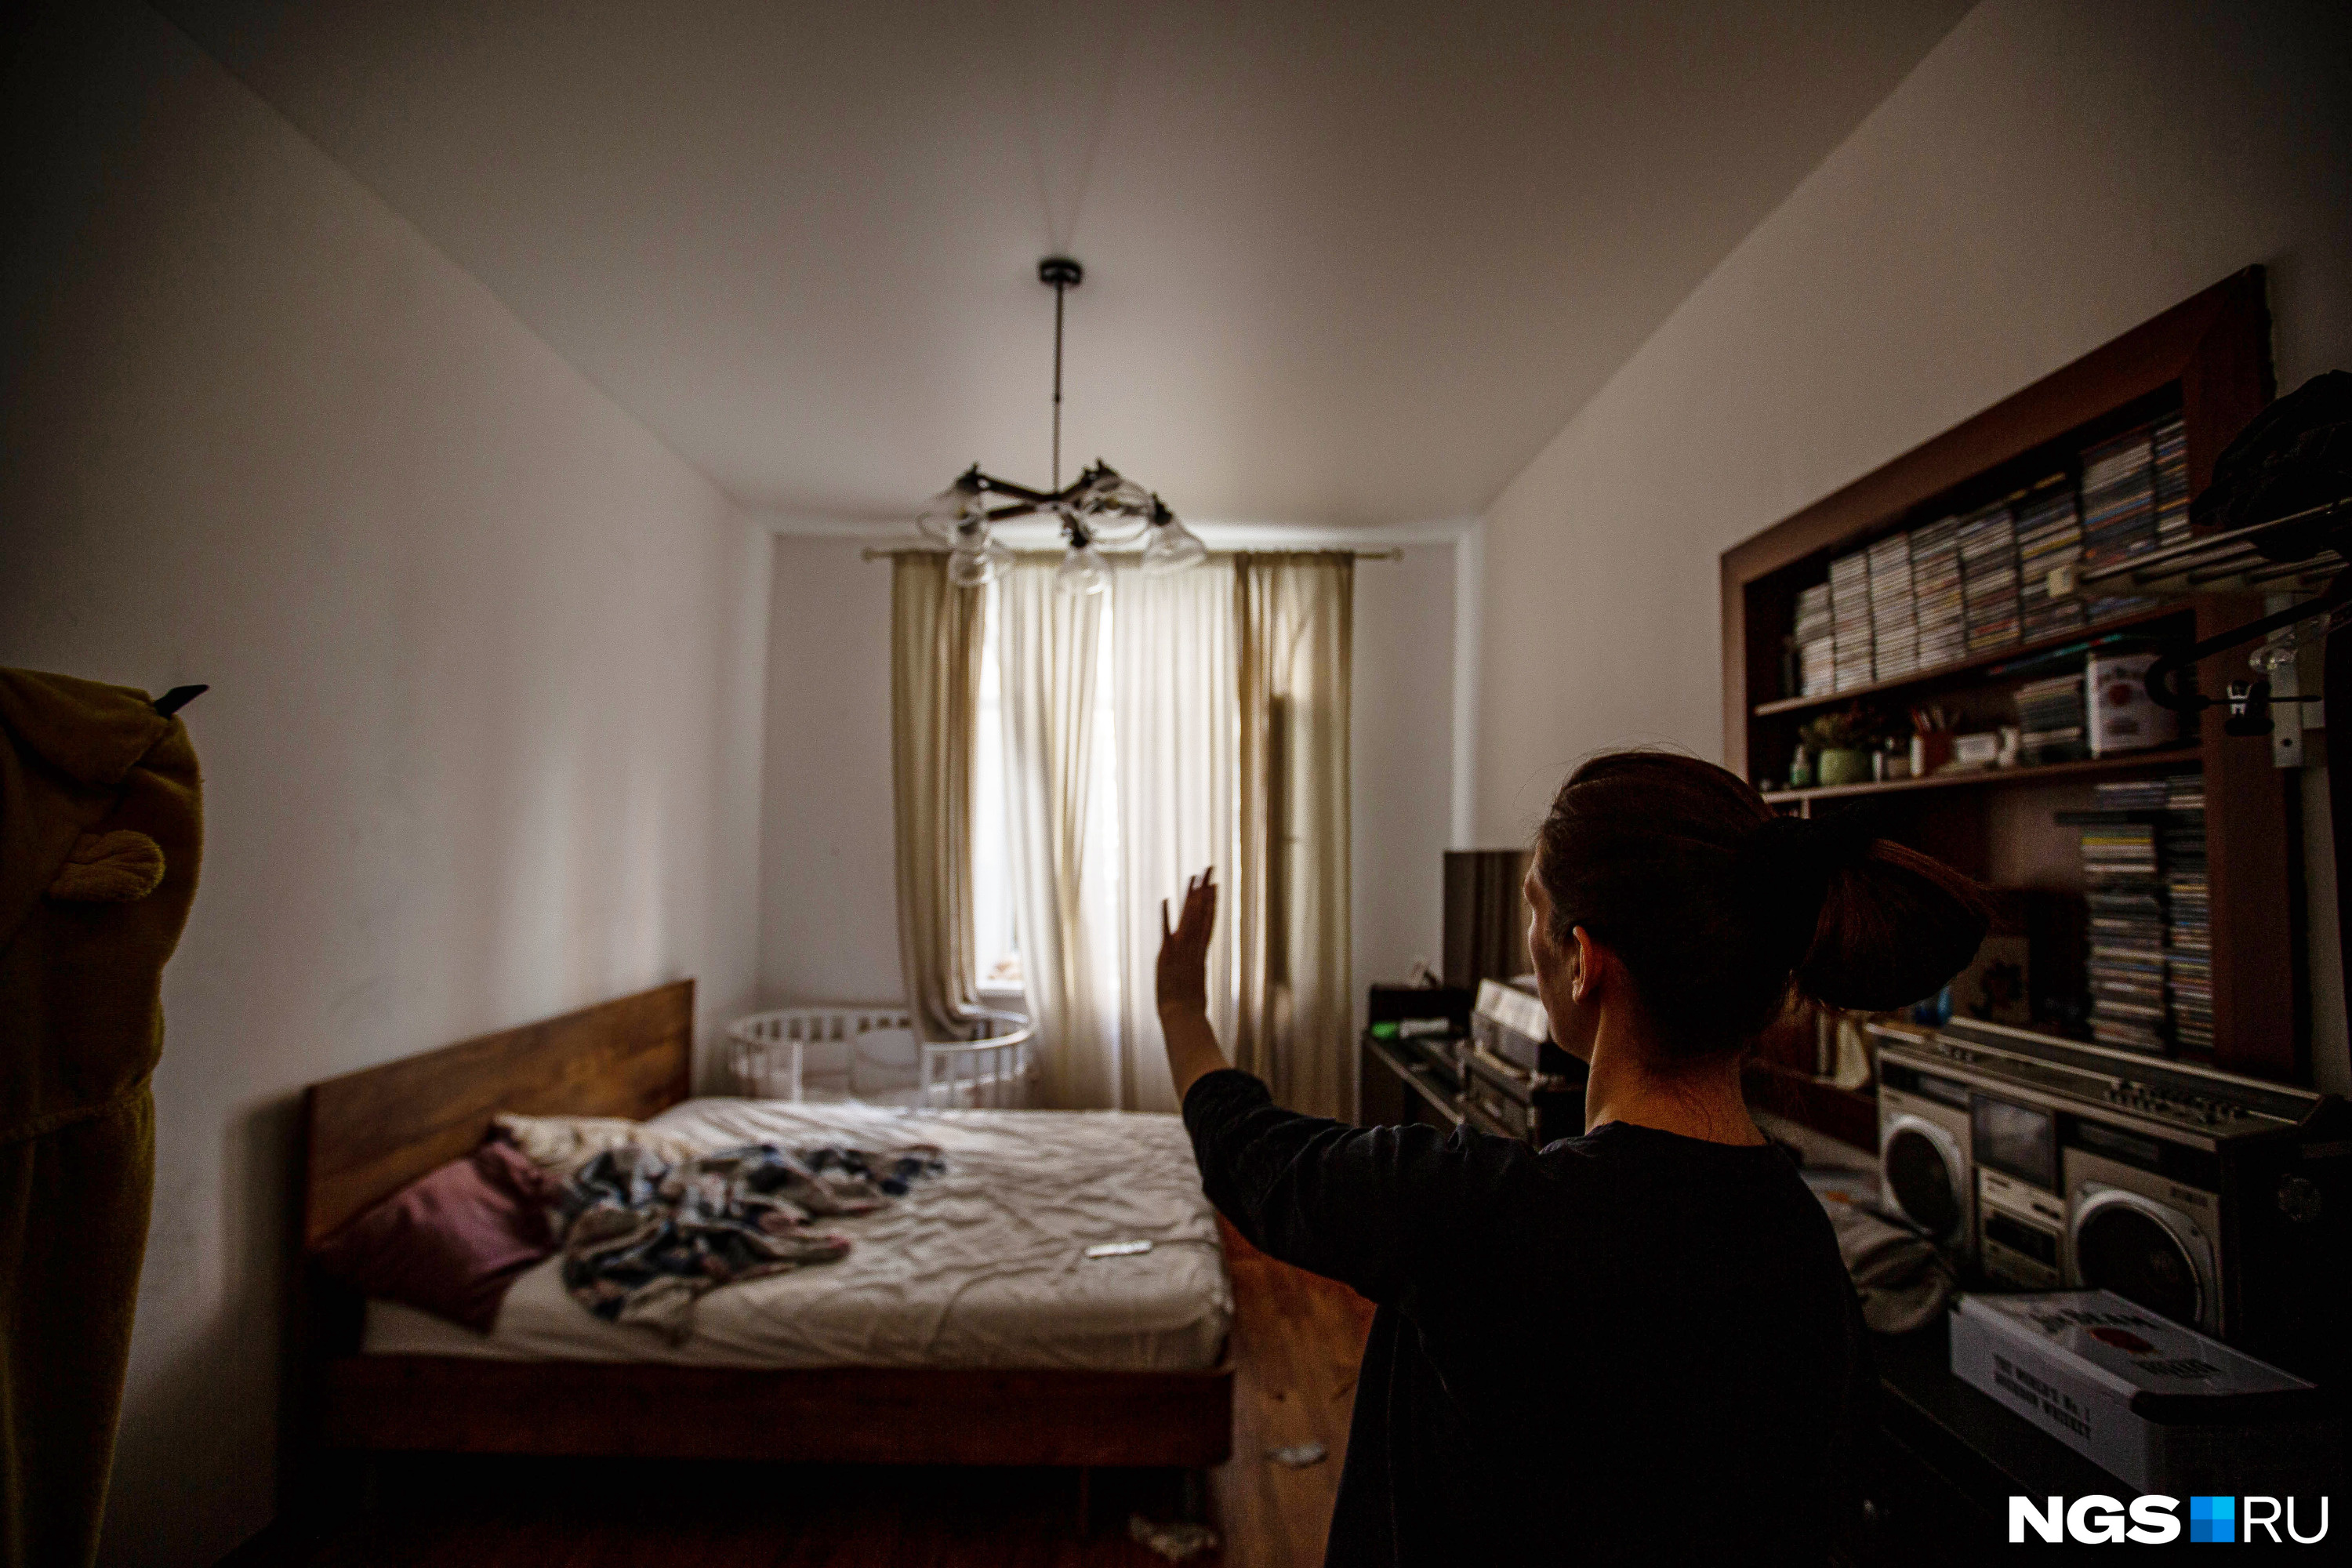 Юлия говорит, что во всей квартире они хотят сделать ремонт, как в спальне, и снять натяжные потолки